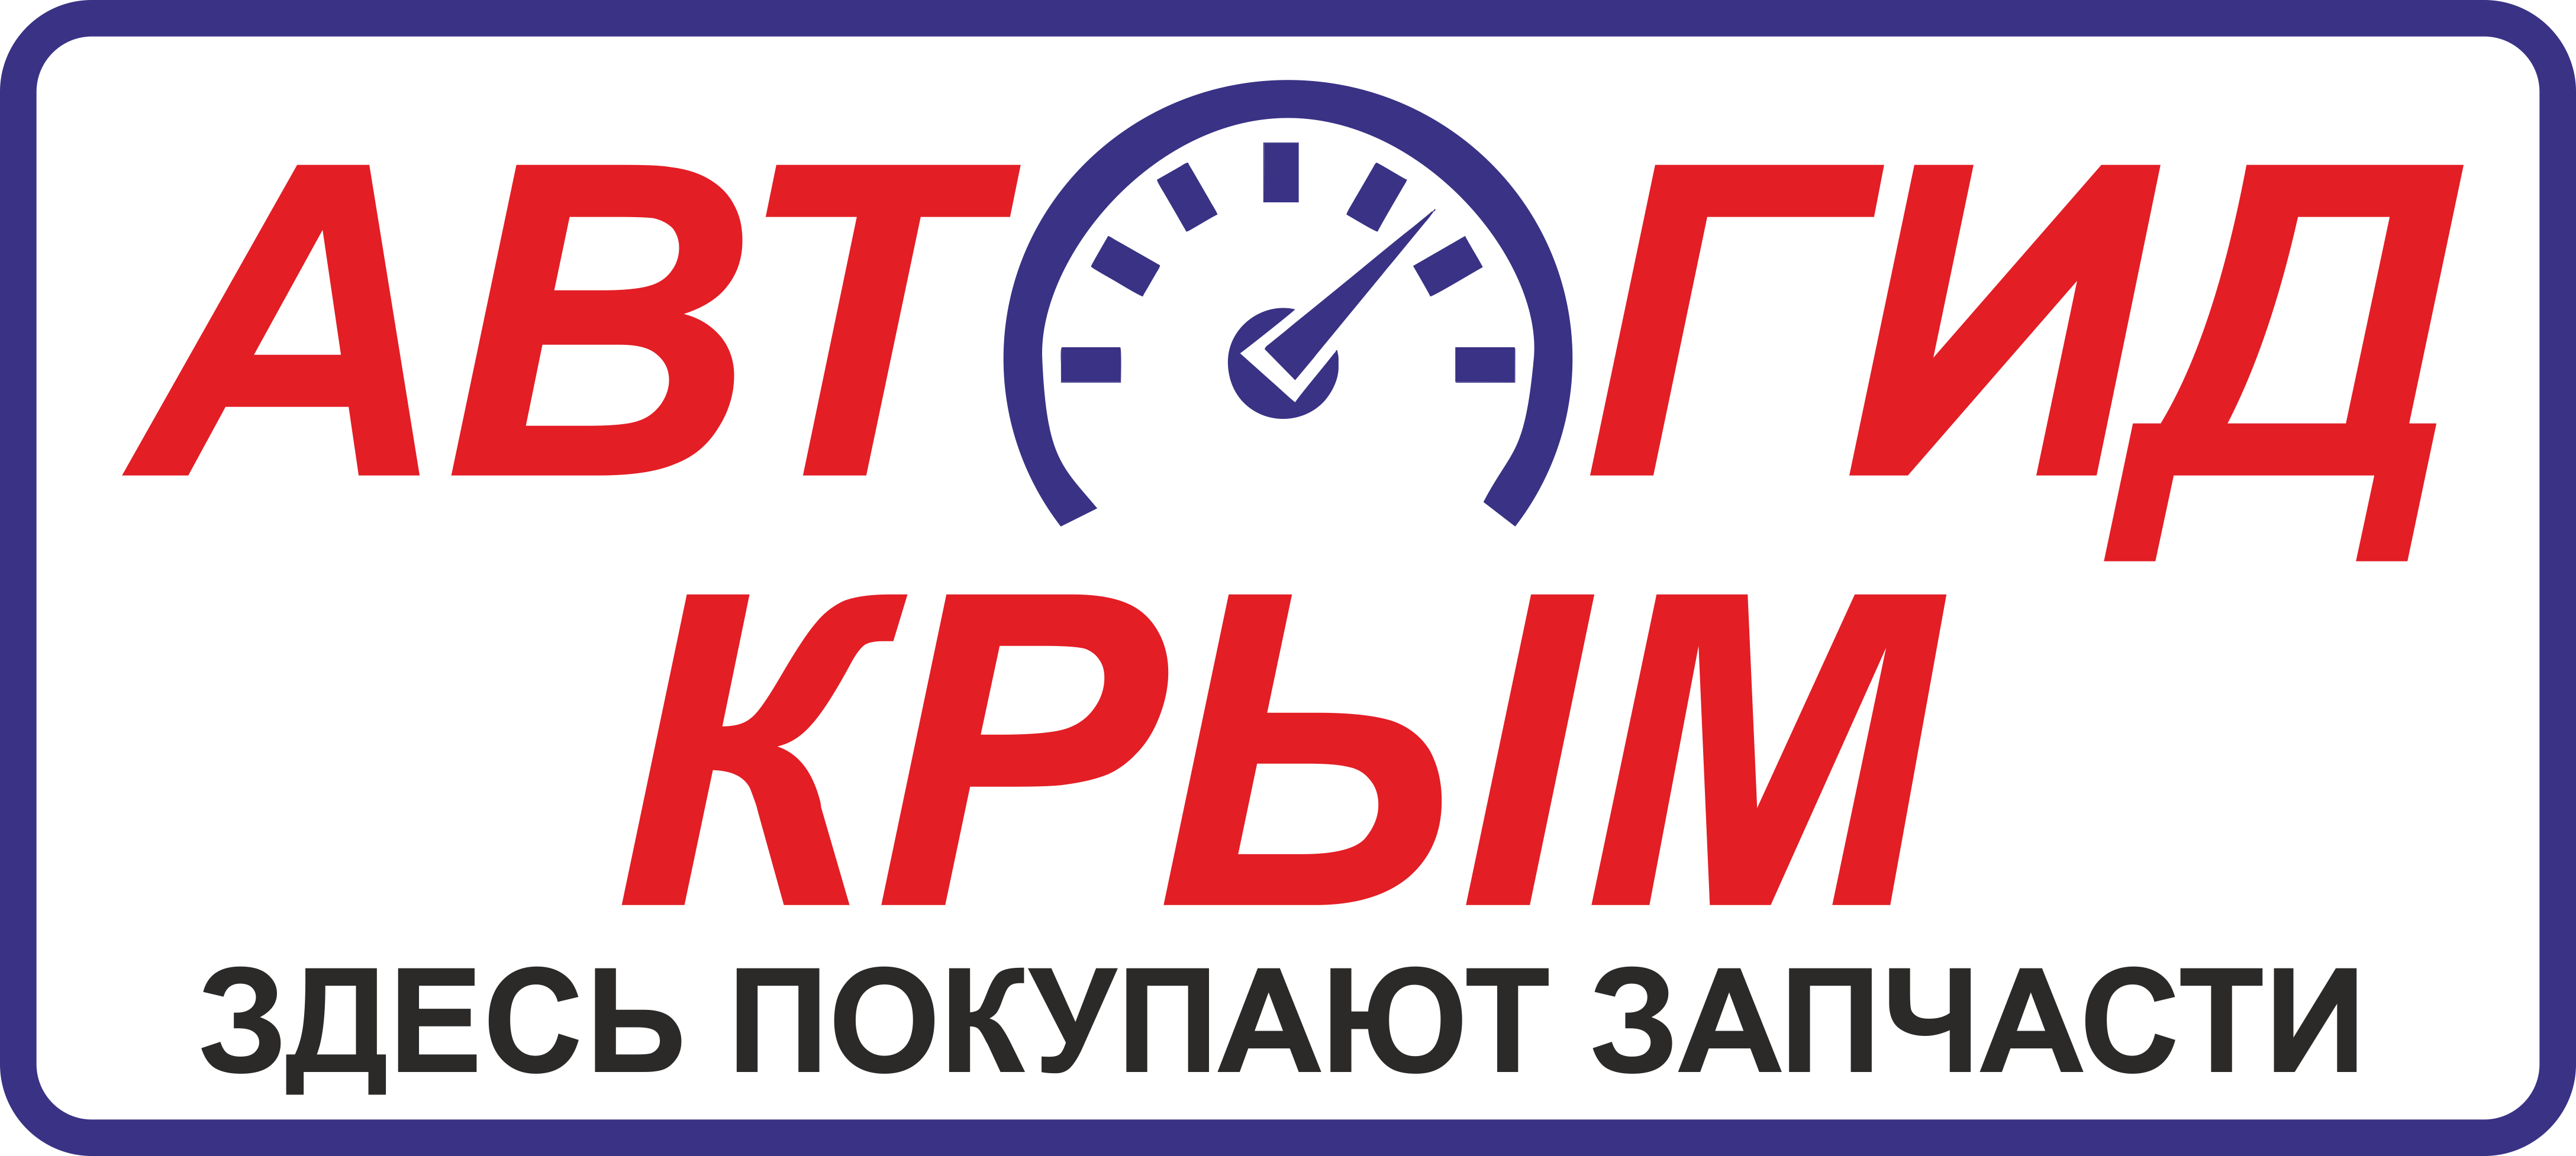 Запчасти Для Иномарок Интернет Магазин В Крыму